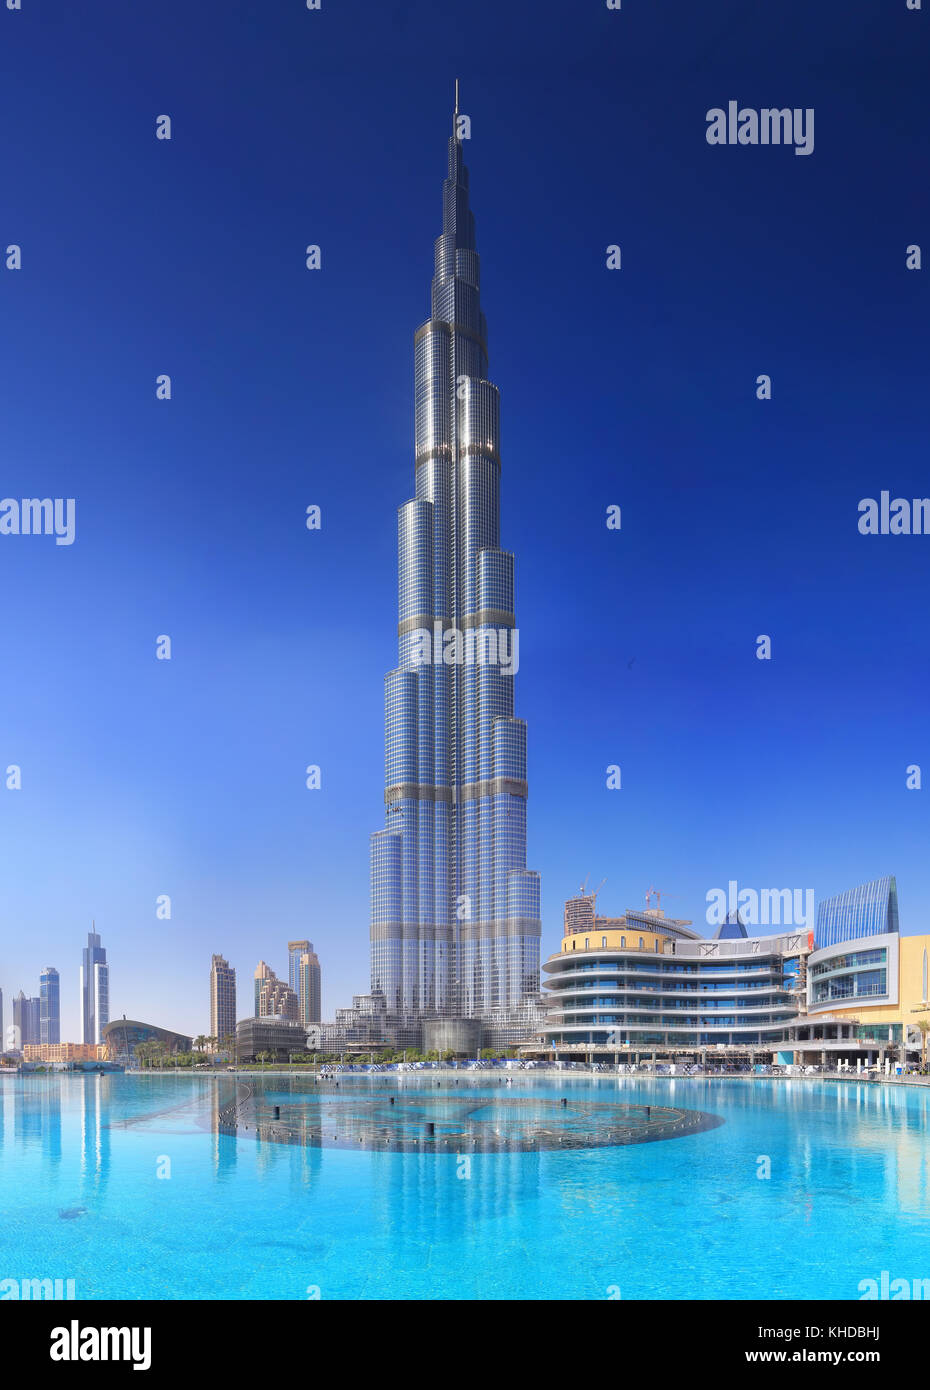 Il Burj Khalifa sul cielo azzurro sfondo. il grattacielo più alto del mondo Burj Khalifa. Foto Stock